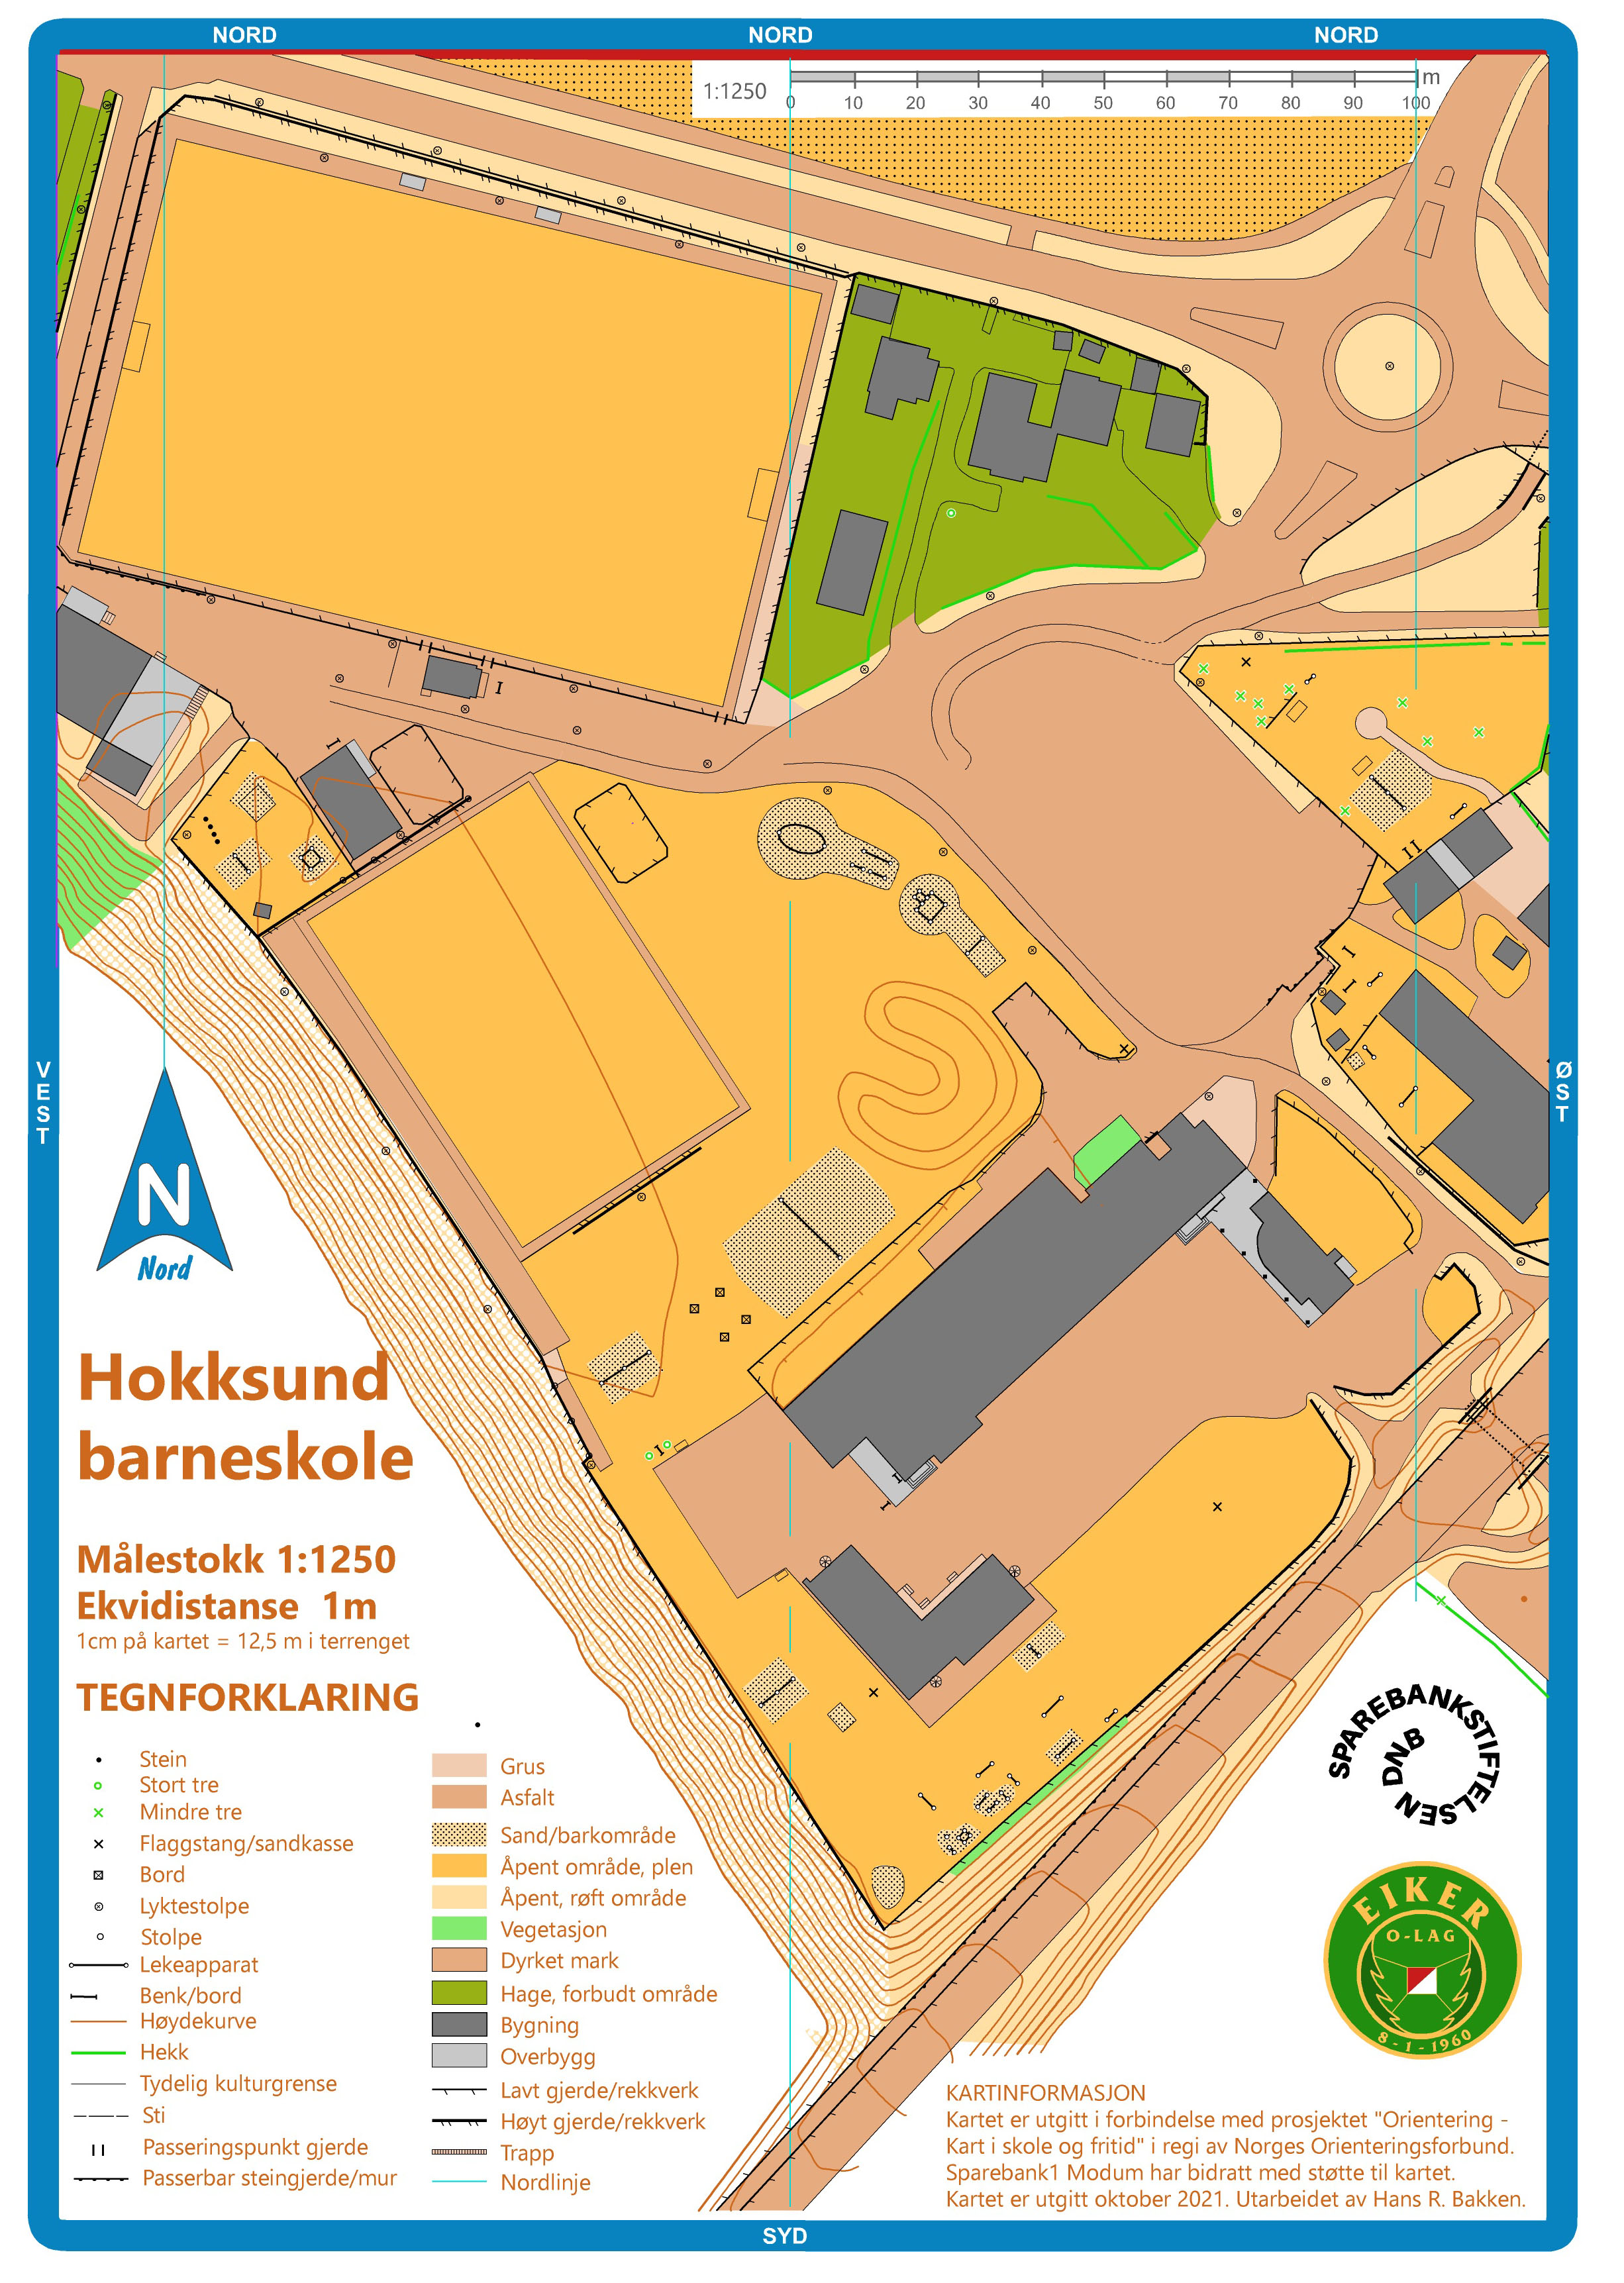 Hokksund barneskole (2021-10-01)